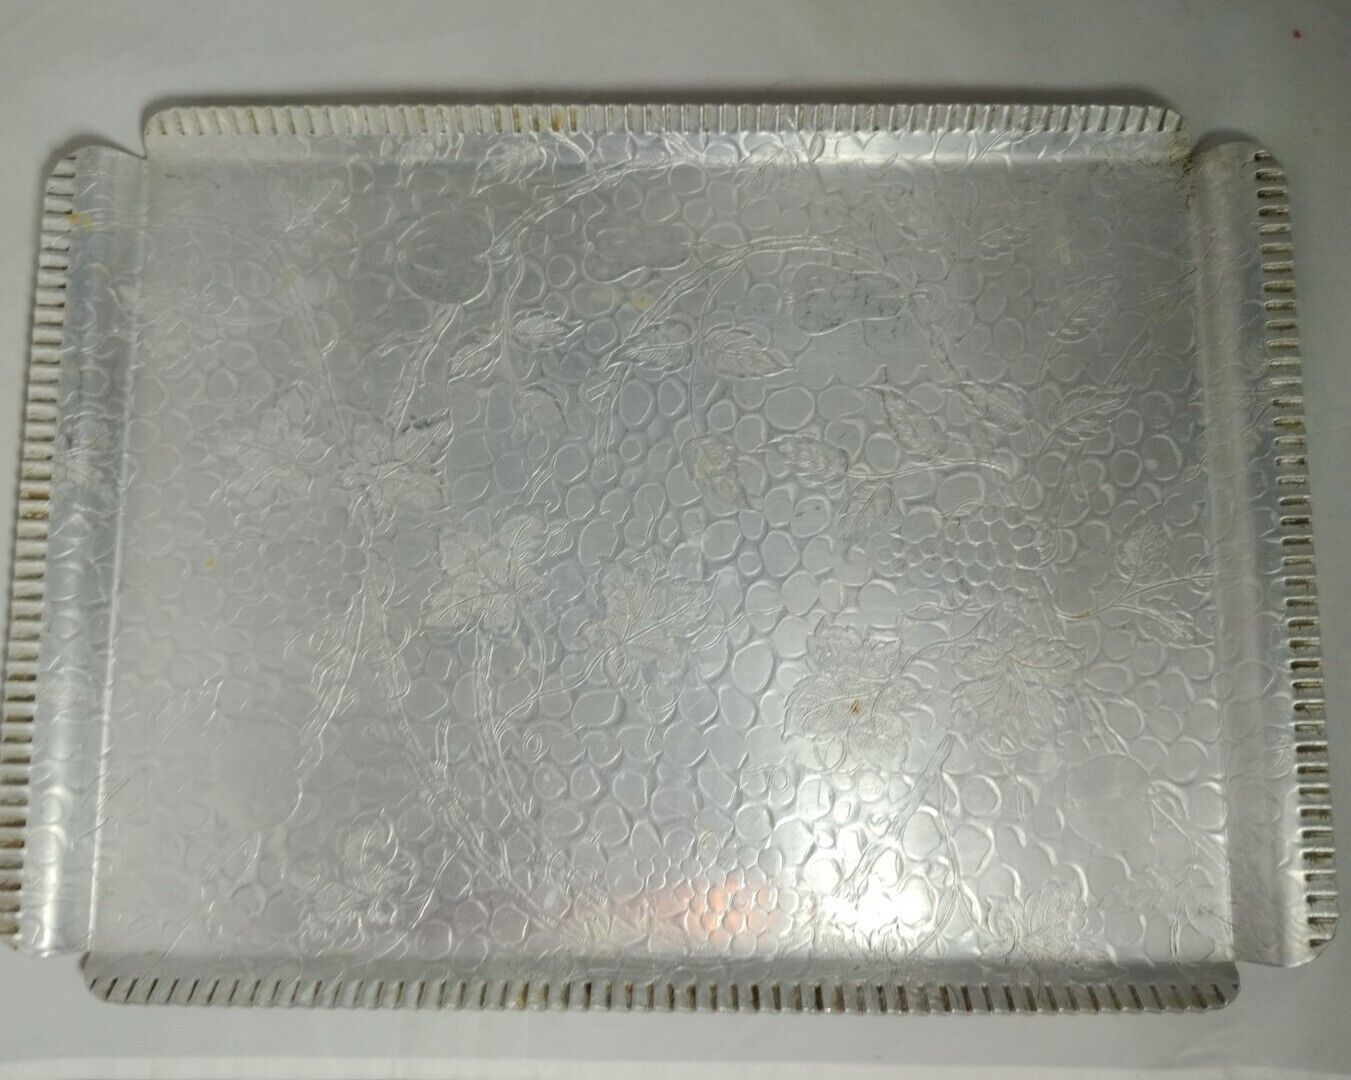 MCM Designed Aluminum Hammered Engraved Fruit Tray Rectangle